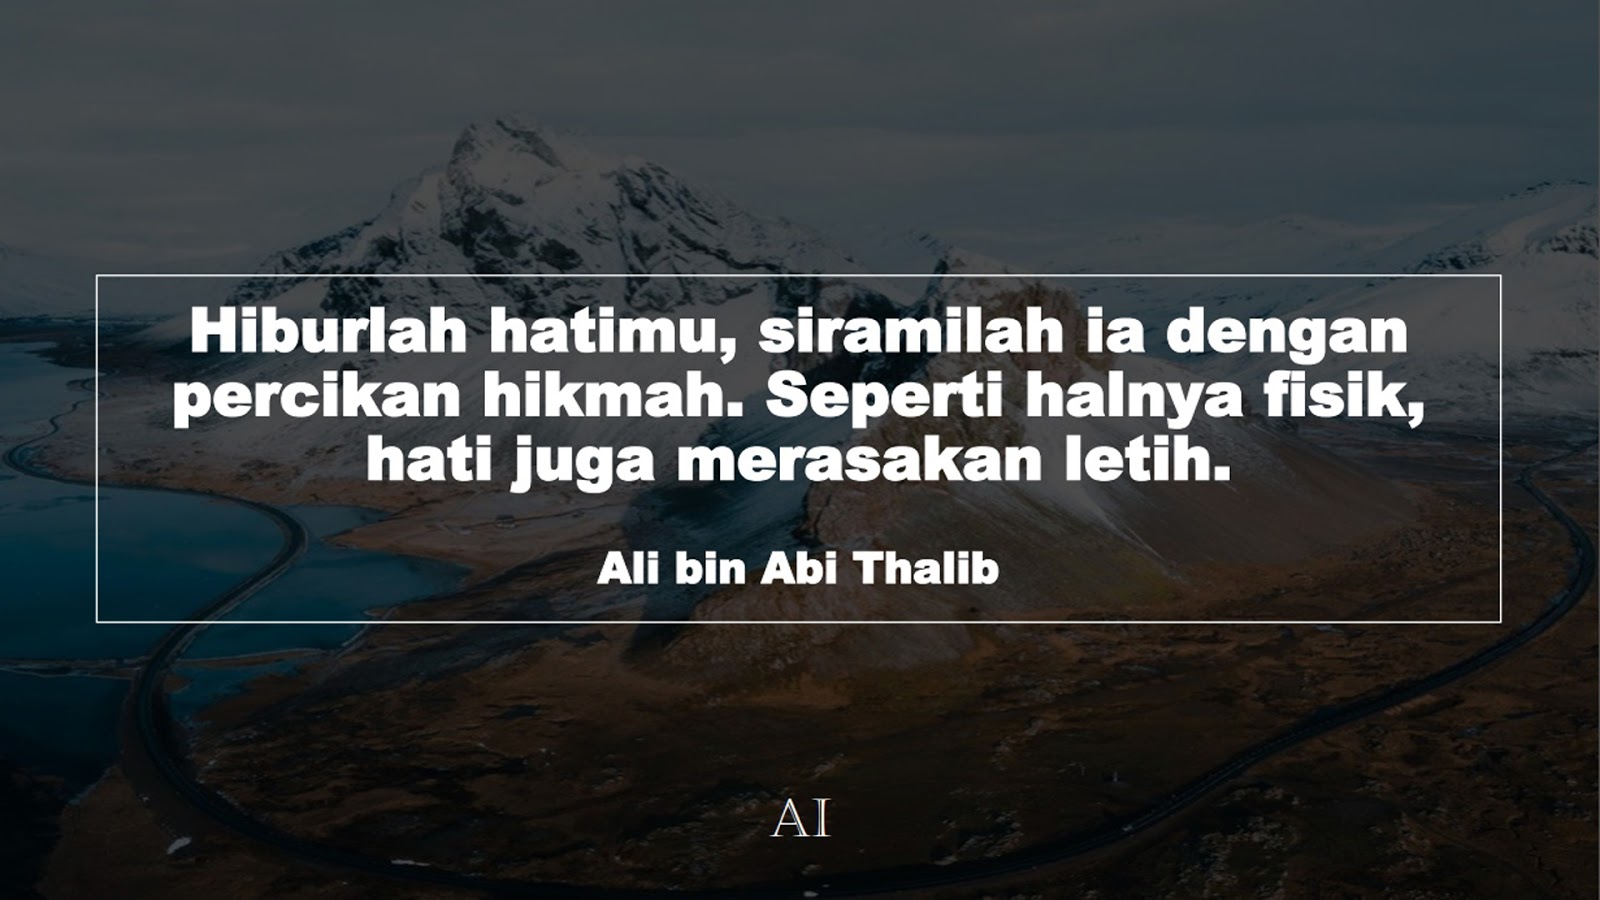 Wallpaper Kata Bijak Ali bin Abi Thalib  (Hiburlah hatimu, siramilah ia dengan percikan hikmah. Seperti halnya fisik, hati juga merasakan letih.)